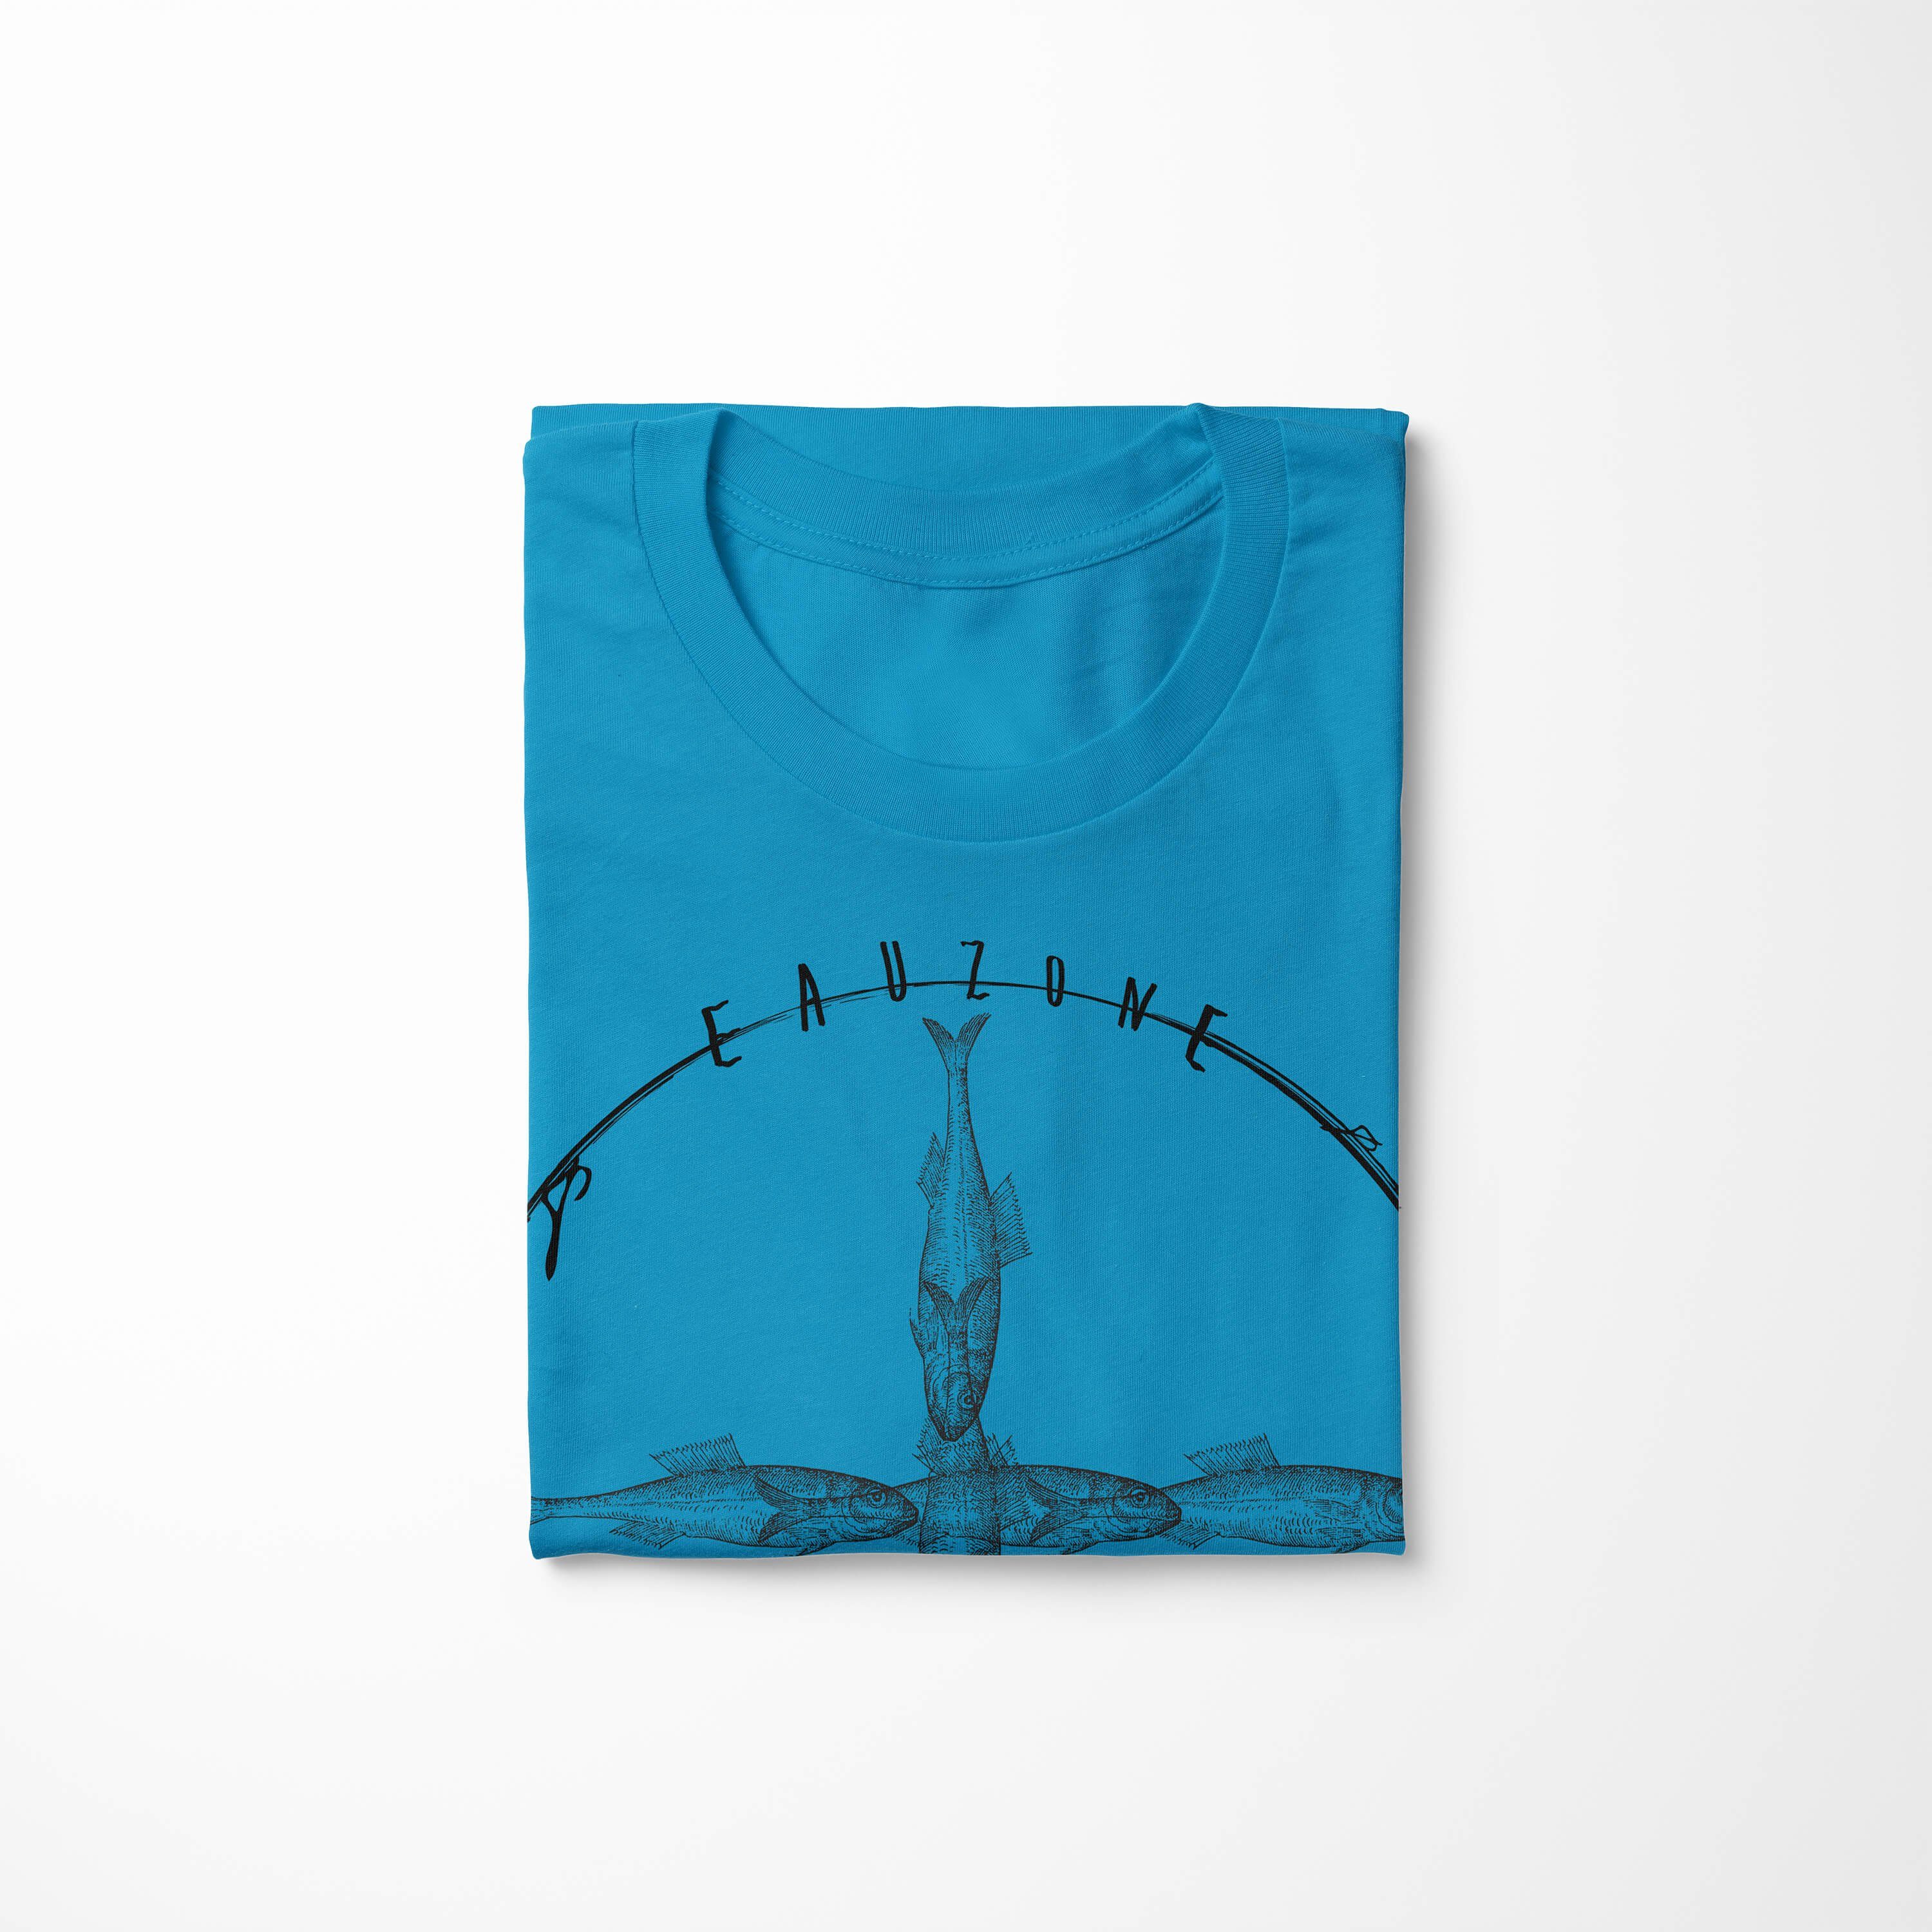 T-Shirt Atoll Art sportlicher und T-Shirt Serie: - Tiefsee Sinus Sea Creatures, / Fische Struktur Sea Schnitt feine 021